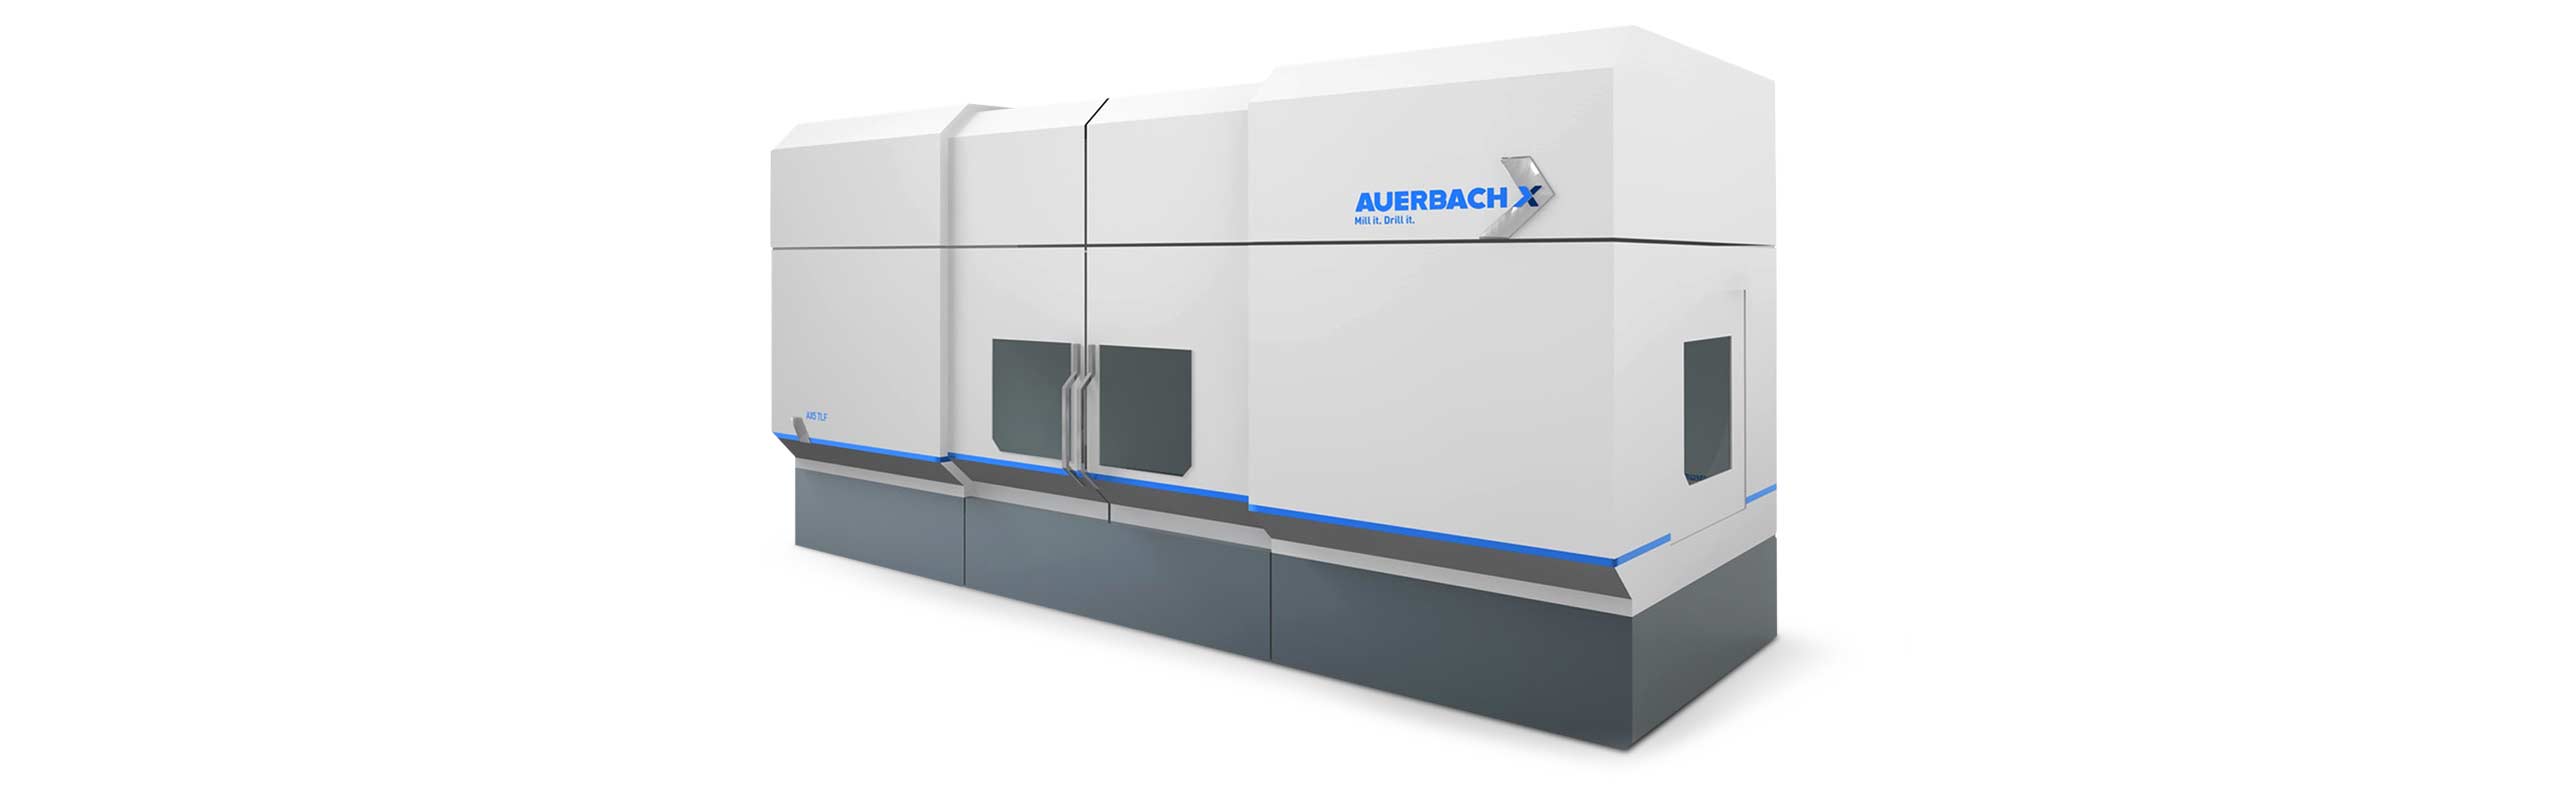 Auerbach AX5 CNC-Fräsmaschine